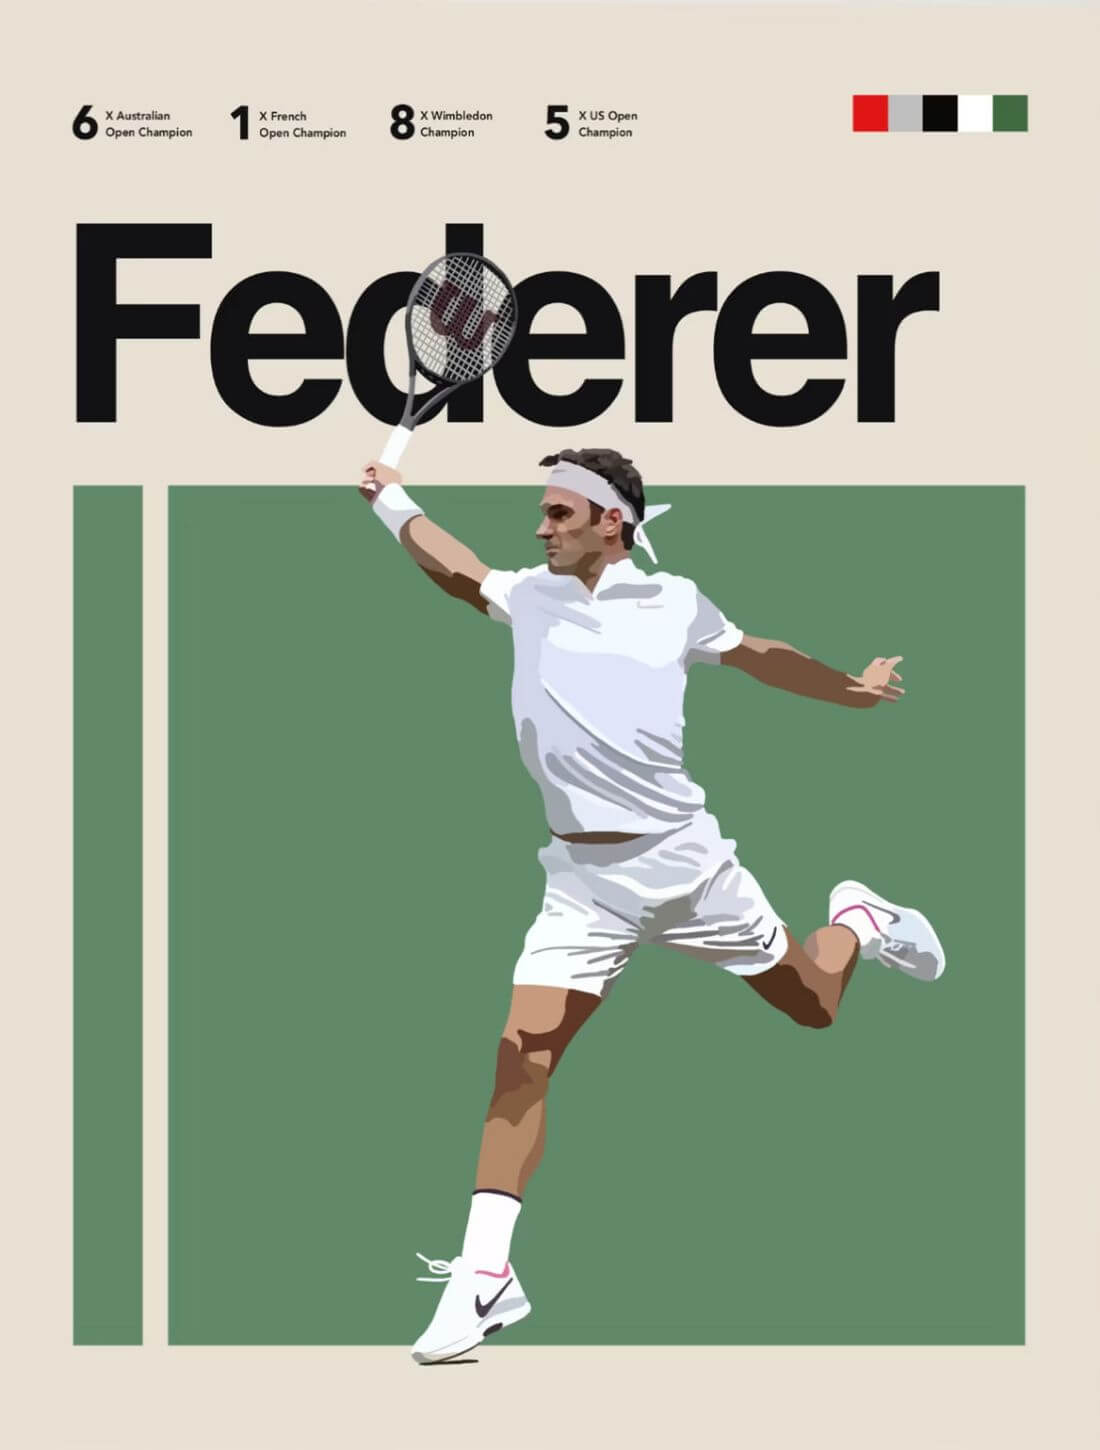 Roger Federer - Tennis GOAT - Graphic Art Poster